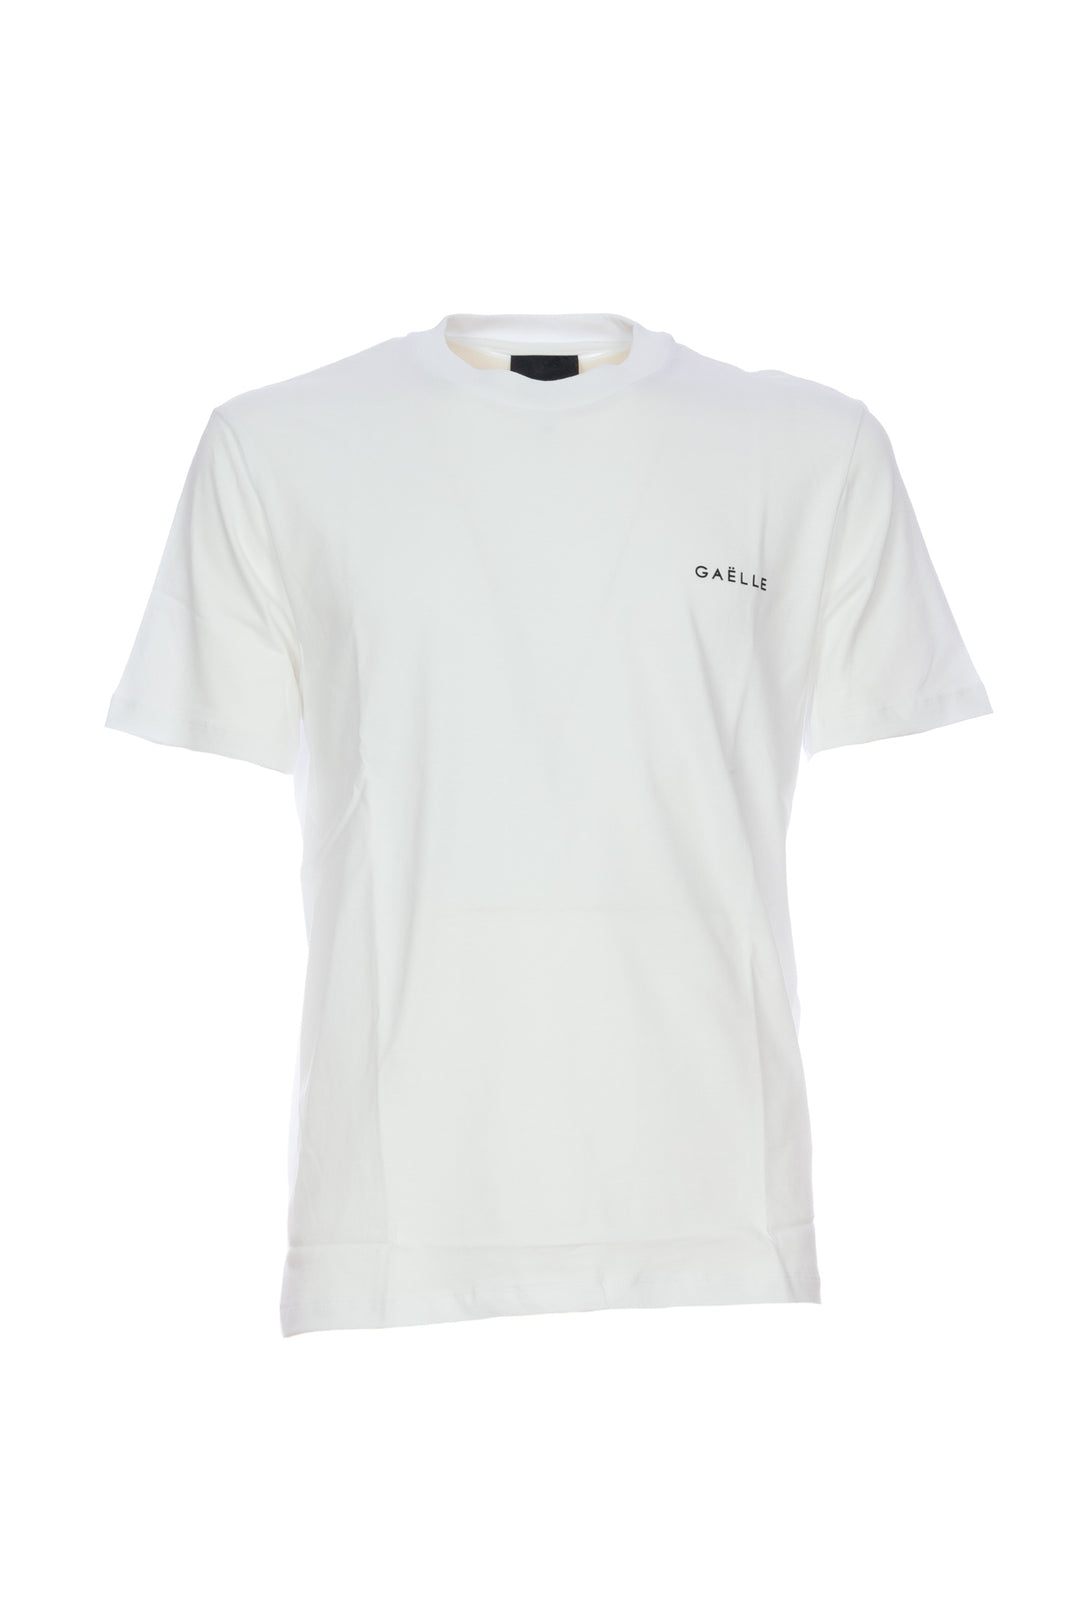 GAELLE T-shirt bianca in jersey di cotone con logo sul petto - Mancinelli 1954